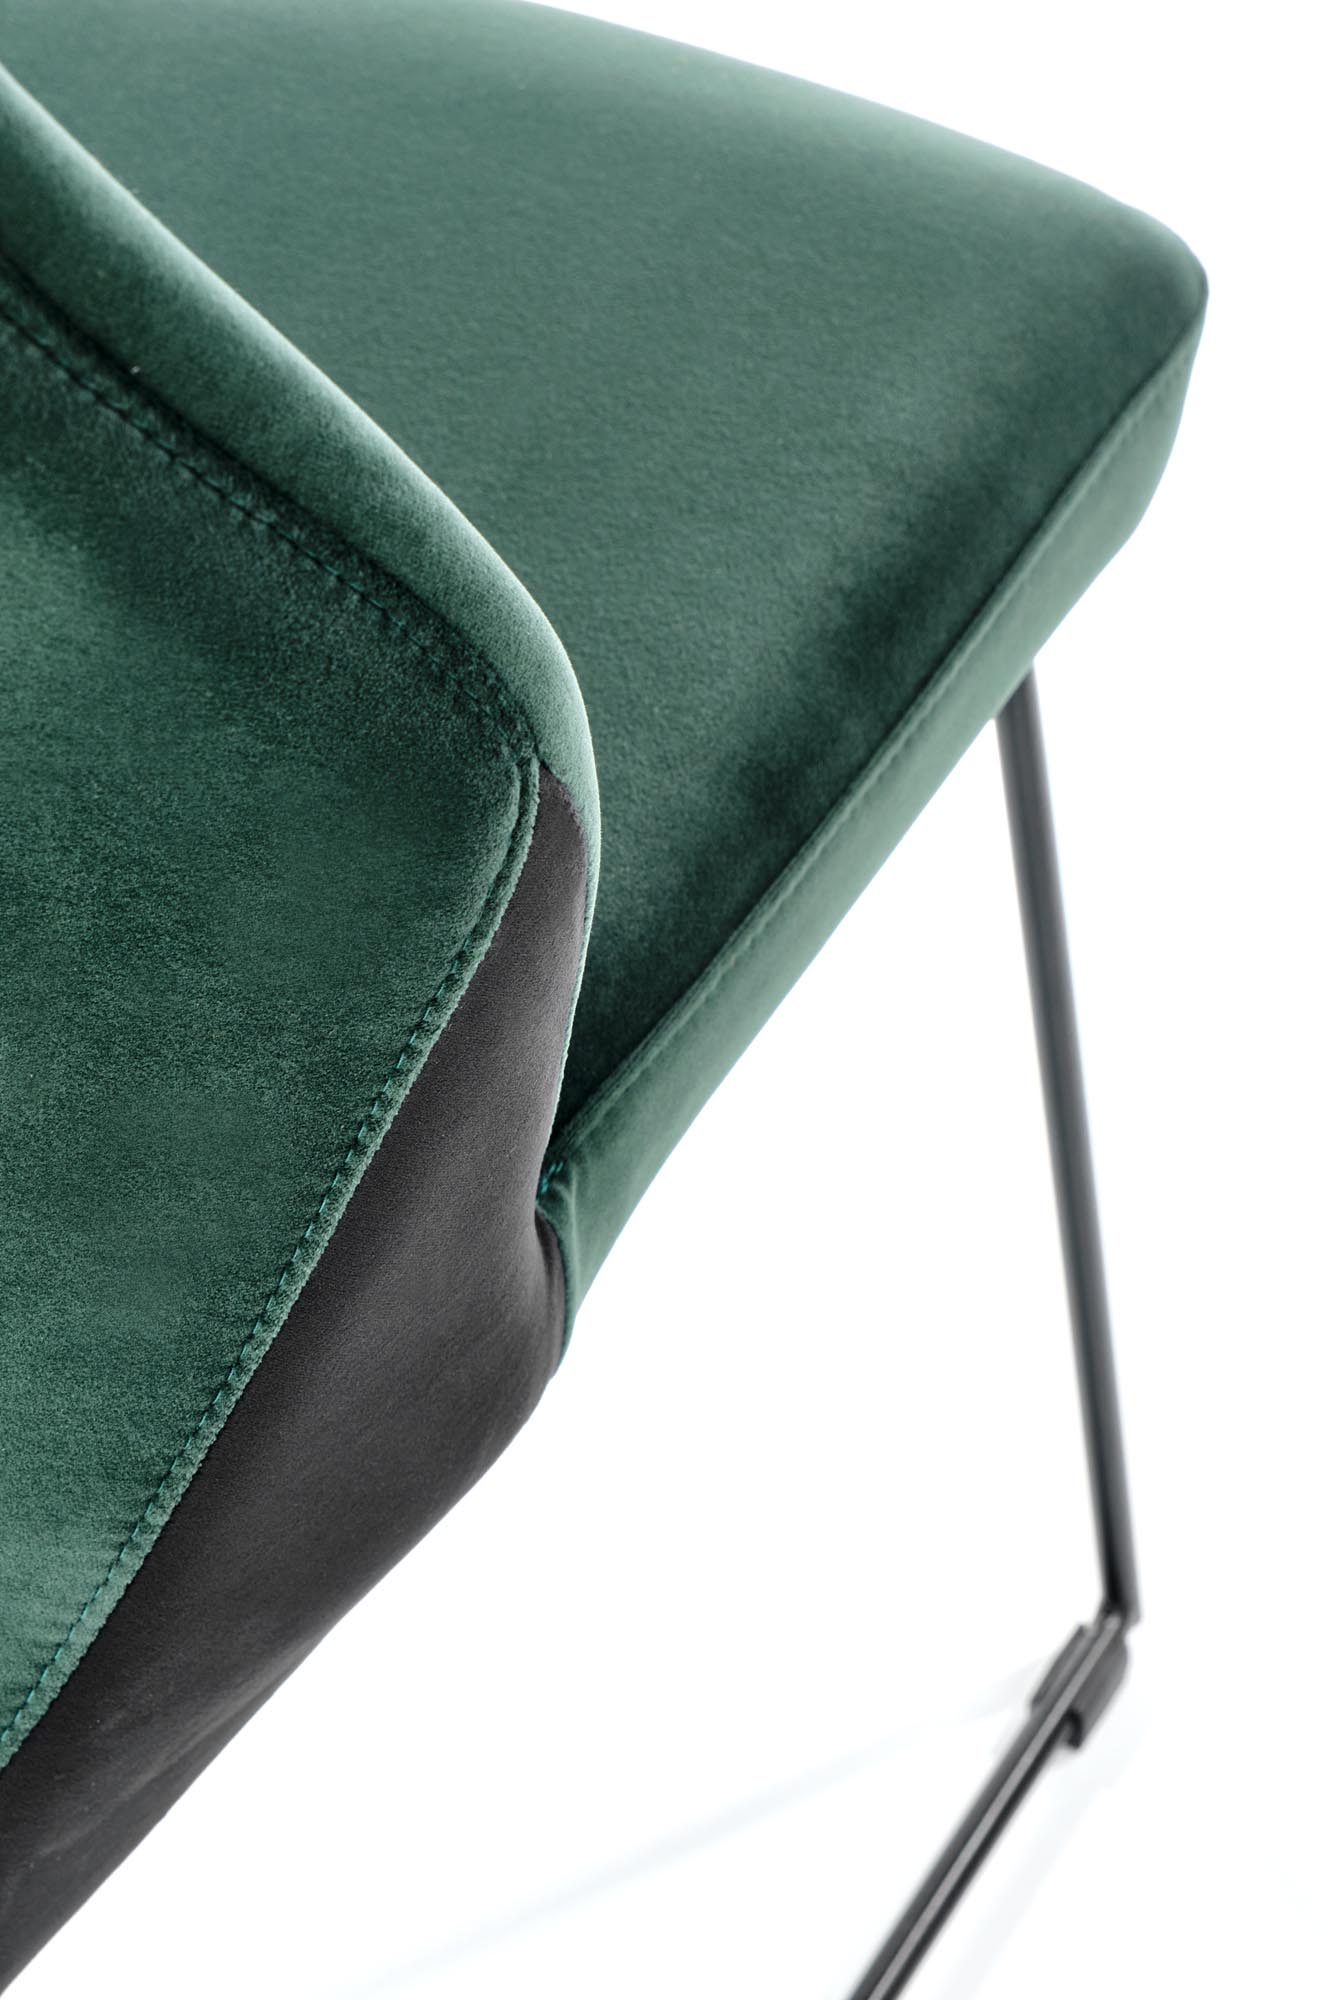 K485 krzesło ciemny zielony k485 krzesło ciemny zielony